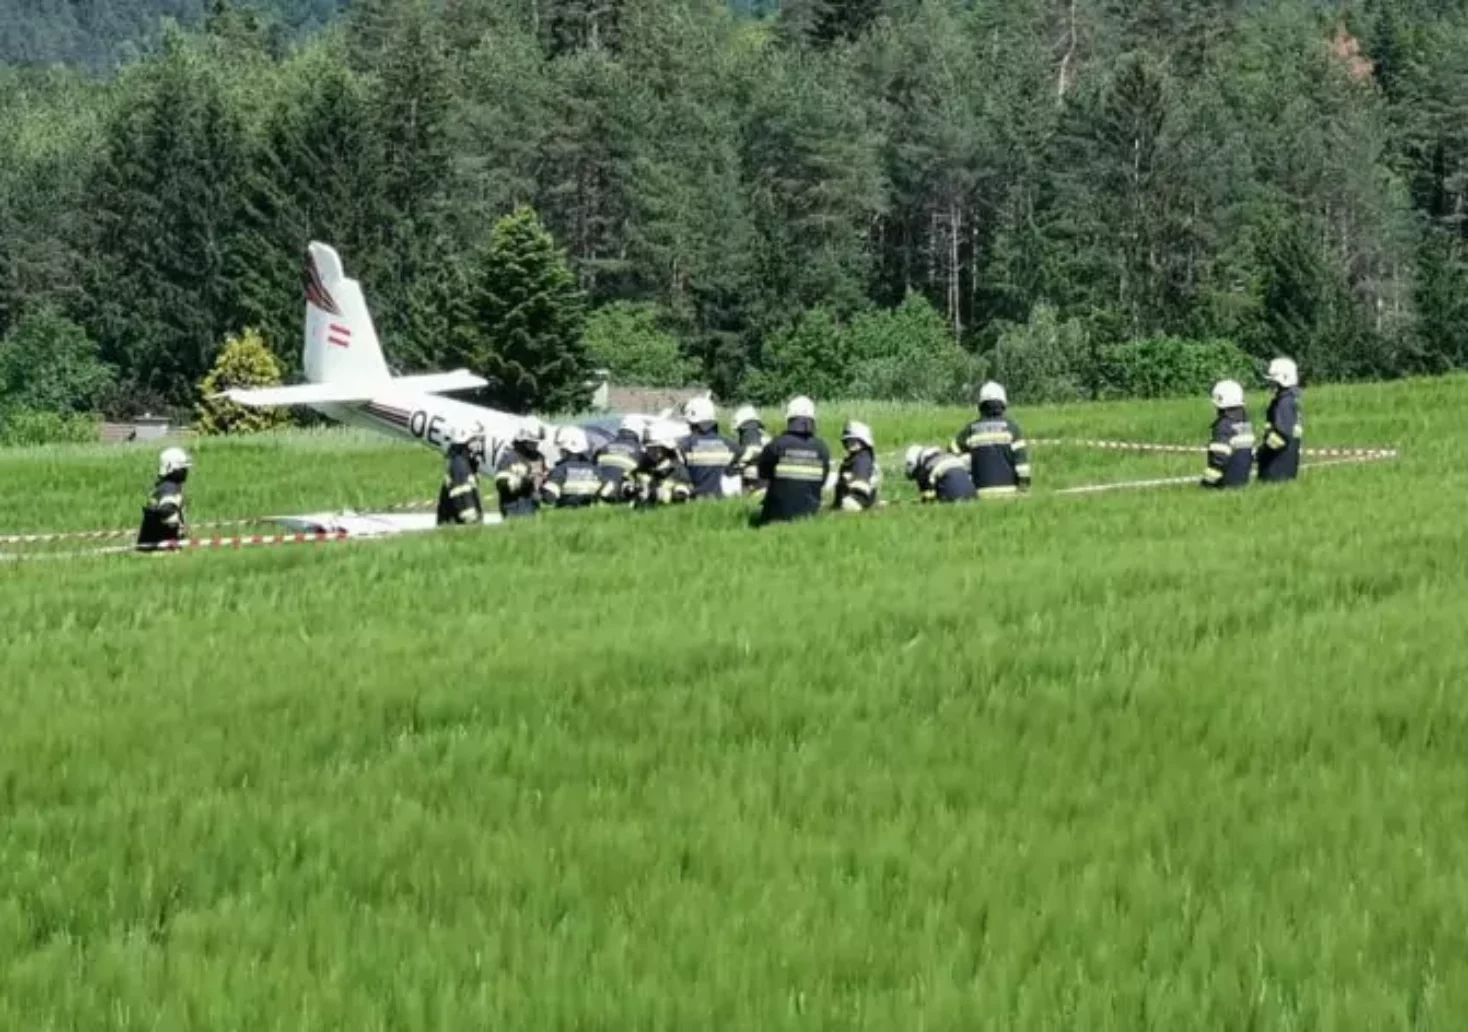 Symbolbild auf 5min.at zeigt Einsatzkräfte der Feuerwehr bei einem Flugzeugabsturz.